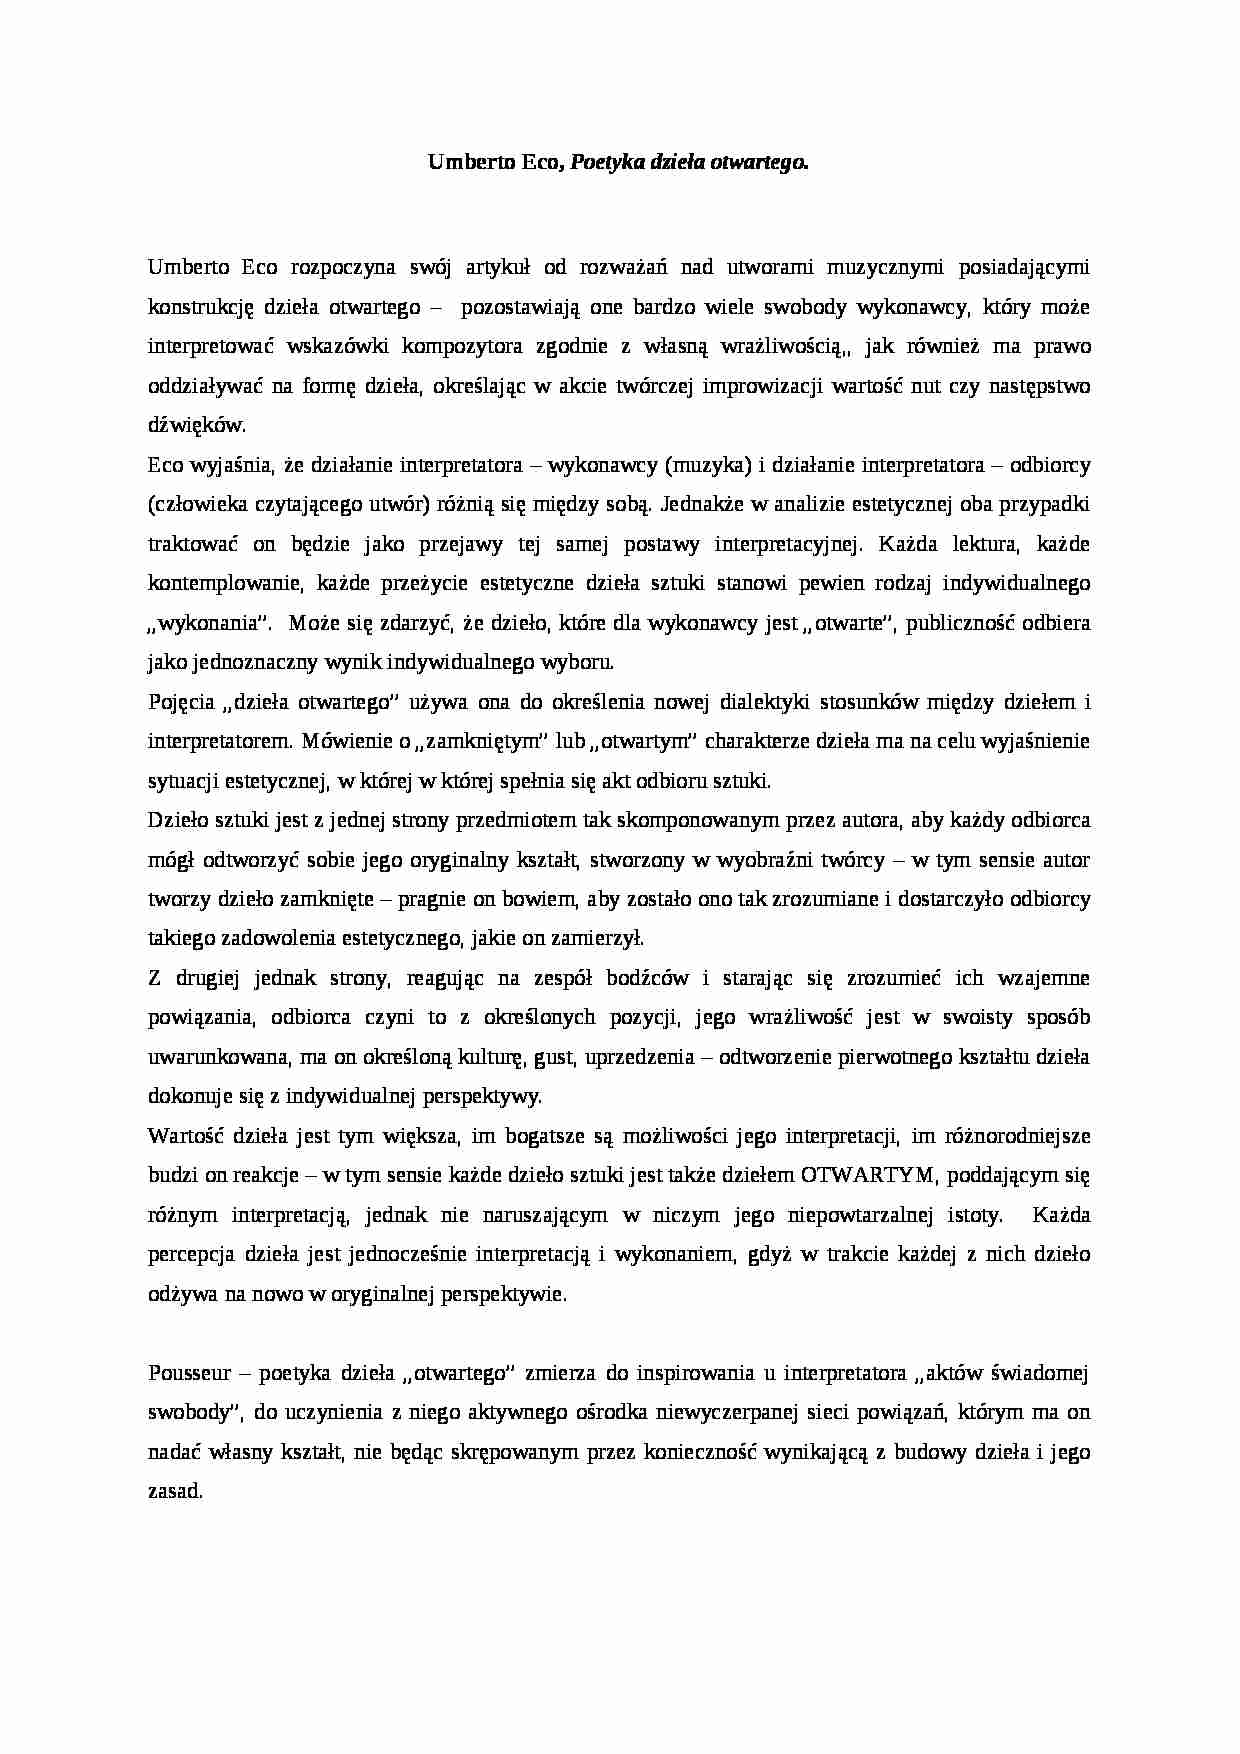 A. Umberto Eco - Poetyka dzieła otwartego - strona 1